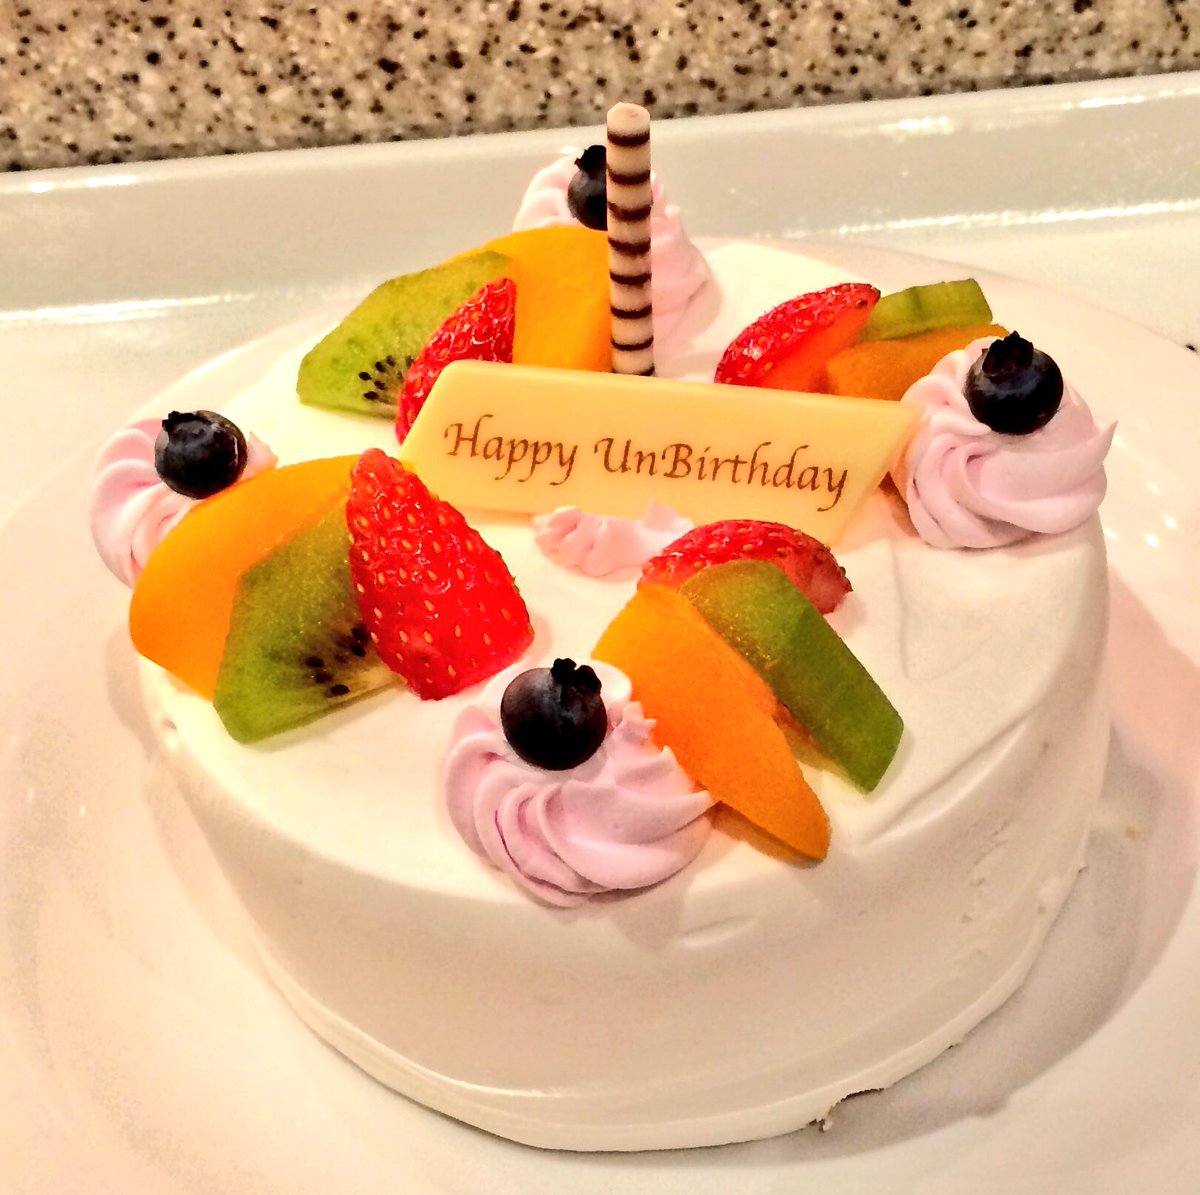 りぃ Twitter પર 昨日は千賀さんのお誕生日のお祝いでケーキを 今日は 何でもない日なのでアンバースデーケーキをww 何でもない日おめでとう 千賀健永生誕祭 アンバースデーケーキ ディズニーランド クイーンオブハートのバンケットホール